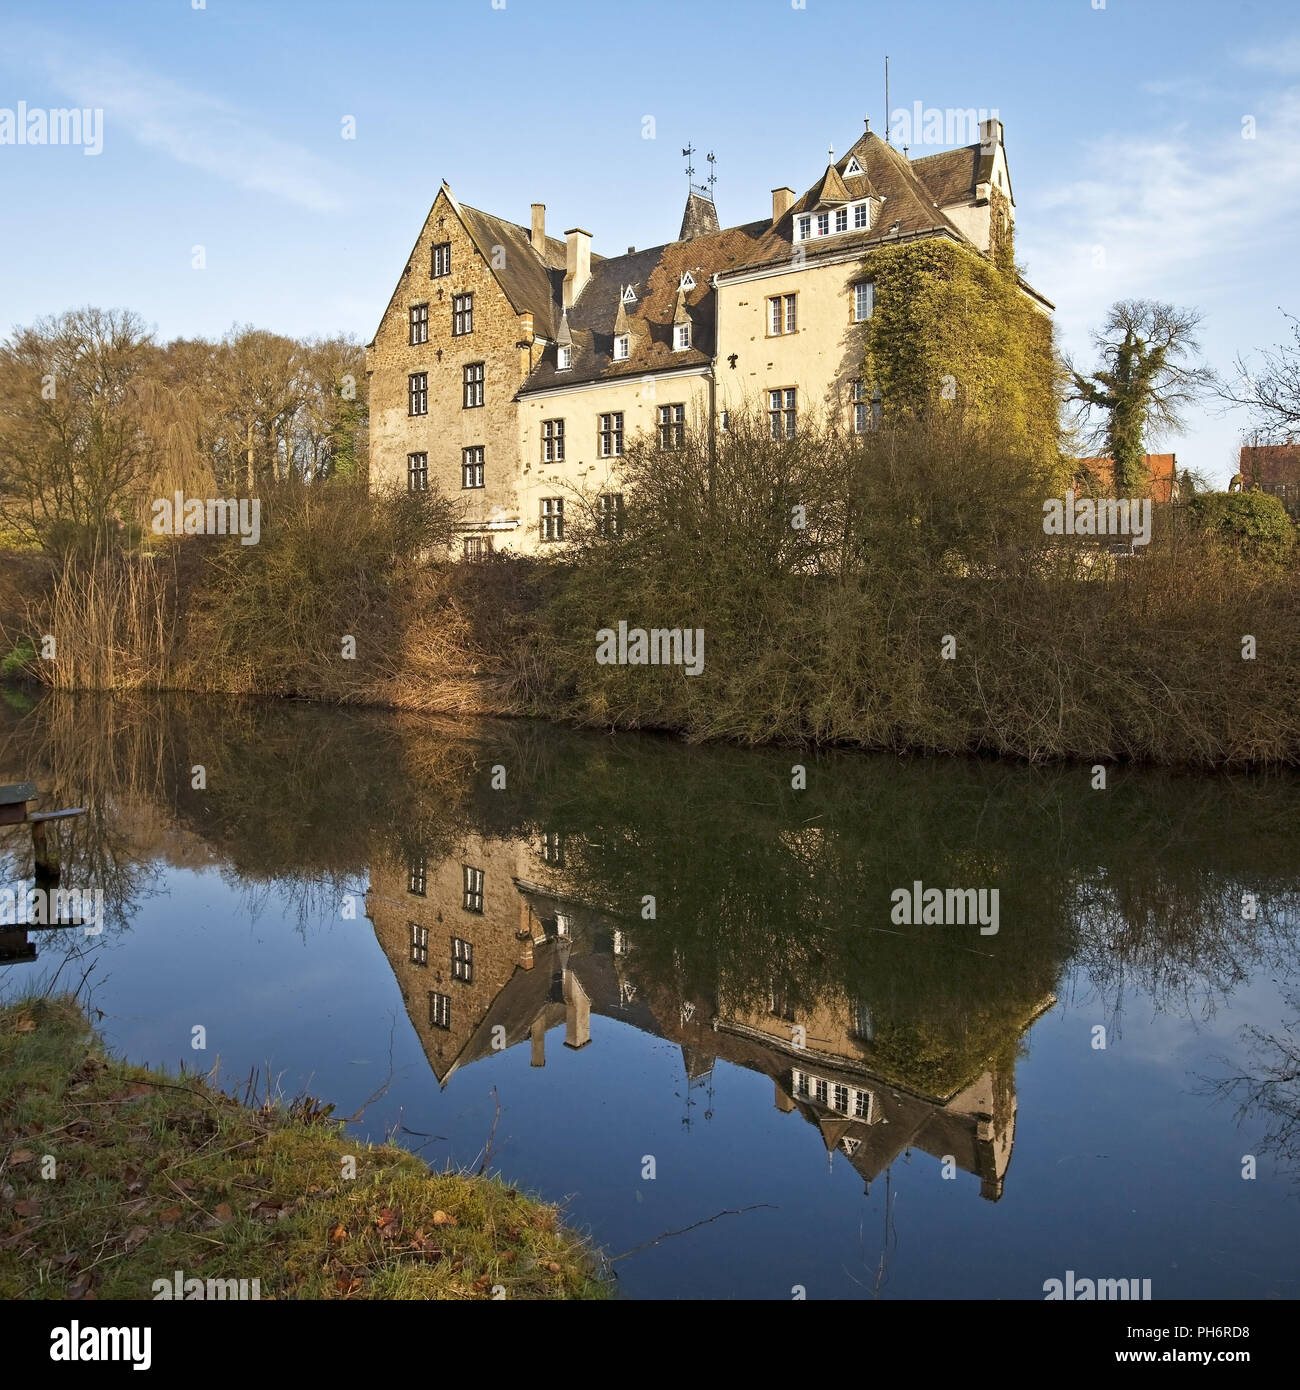 Castle Höllinghofen, Arnsberg, Sauerland, Germany Stock Photo